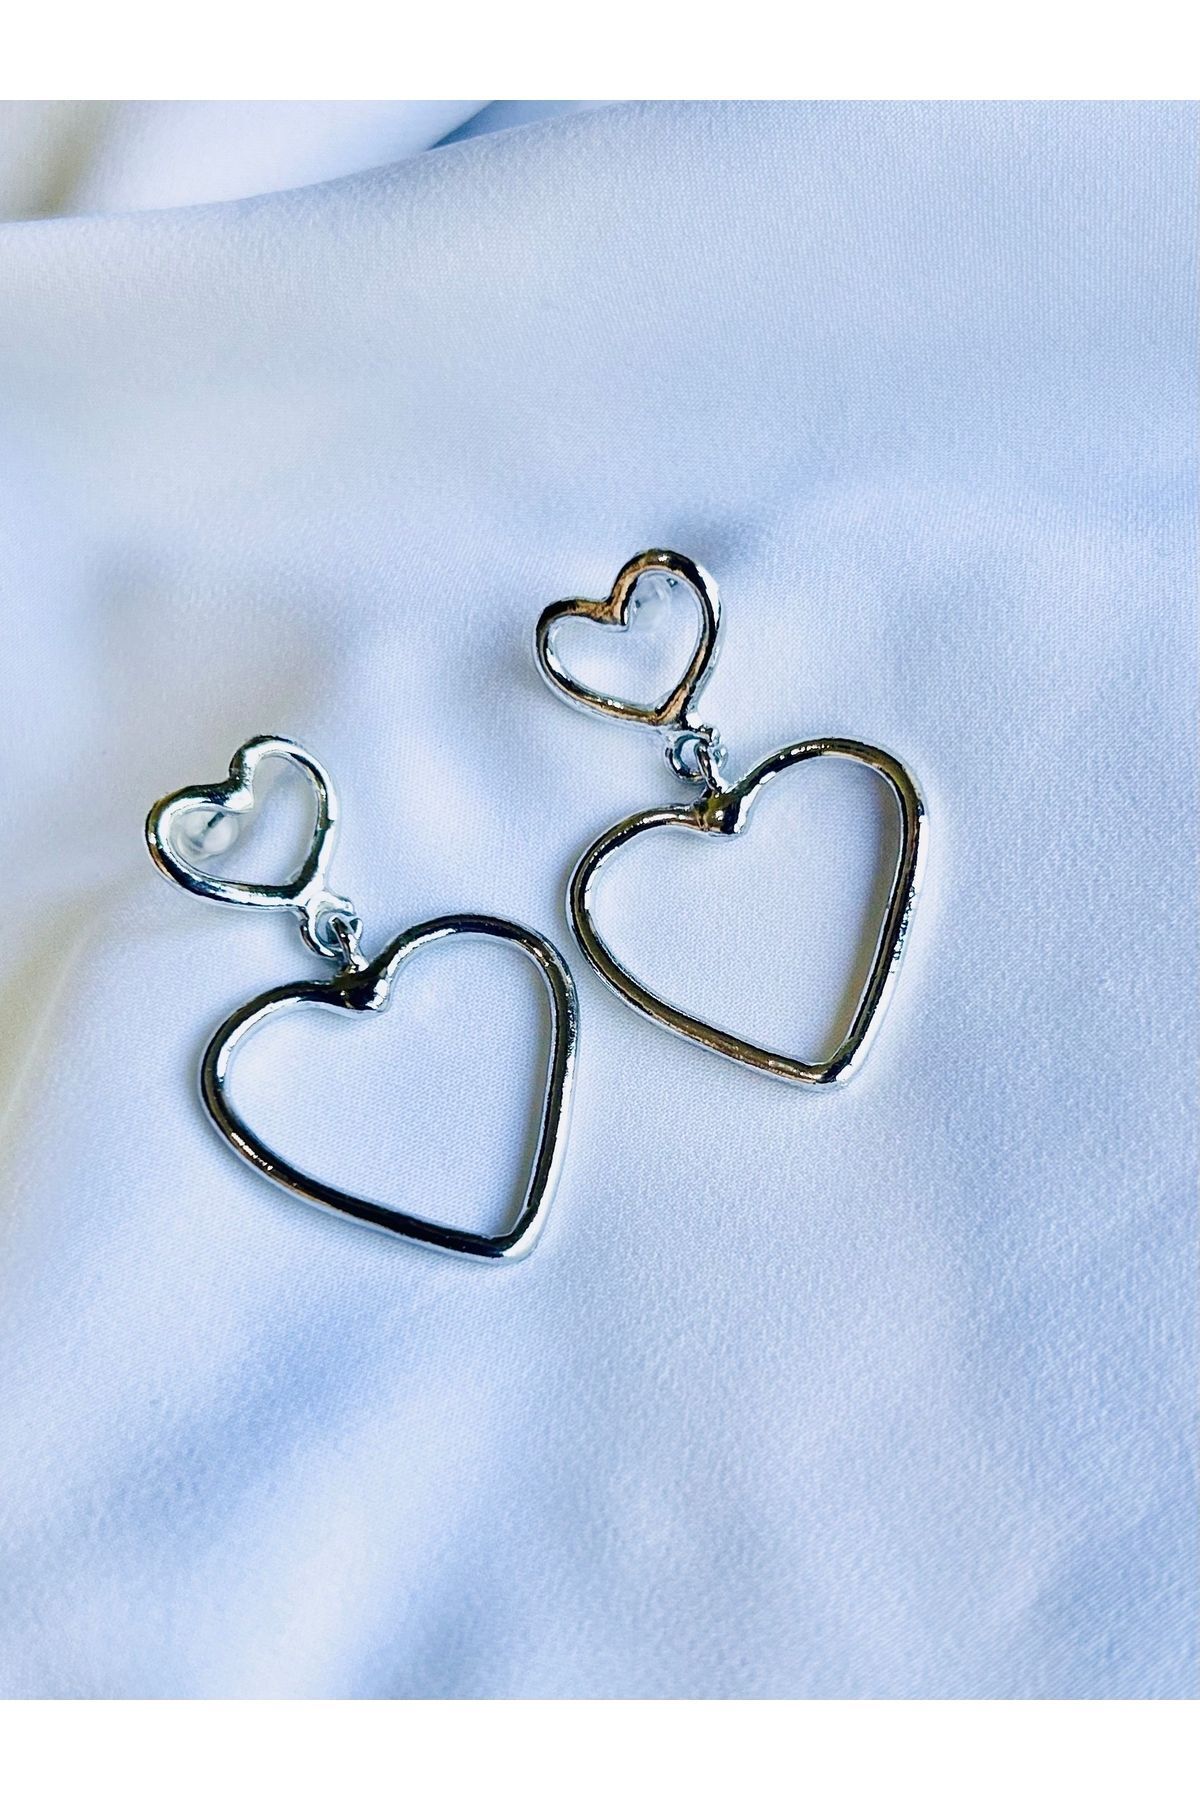 Sibelon Gümüş Renk Sallantılı Kalpli Küpe Kalp Model Küpe